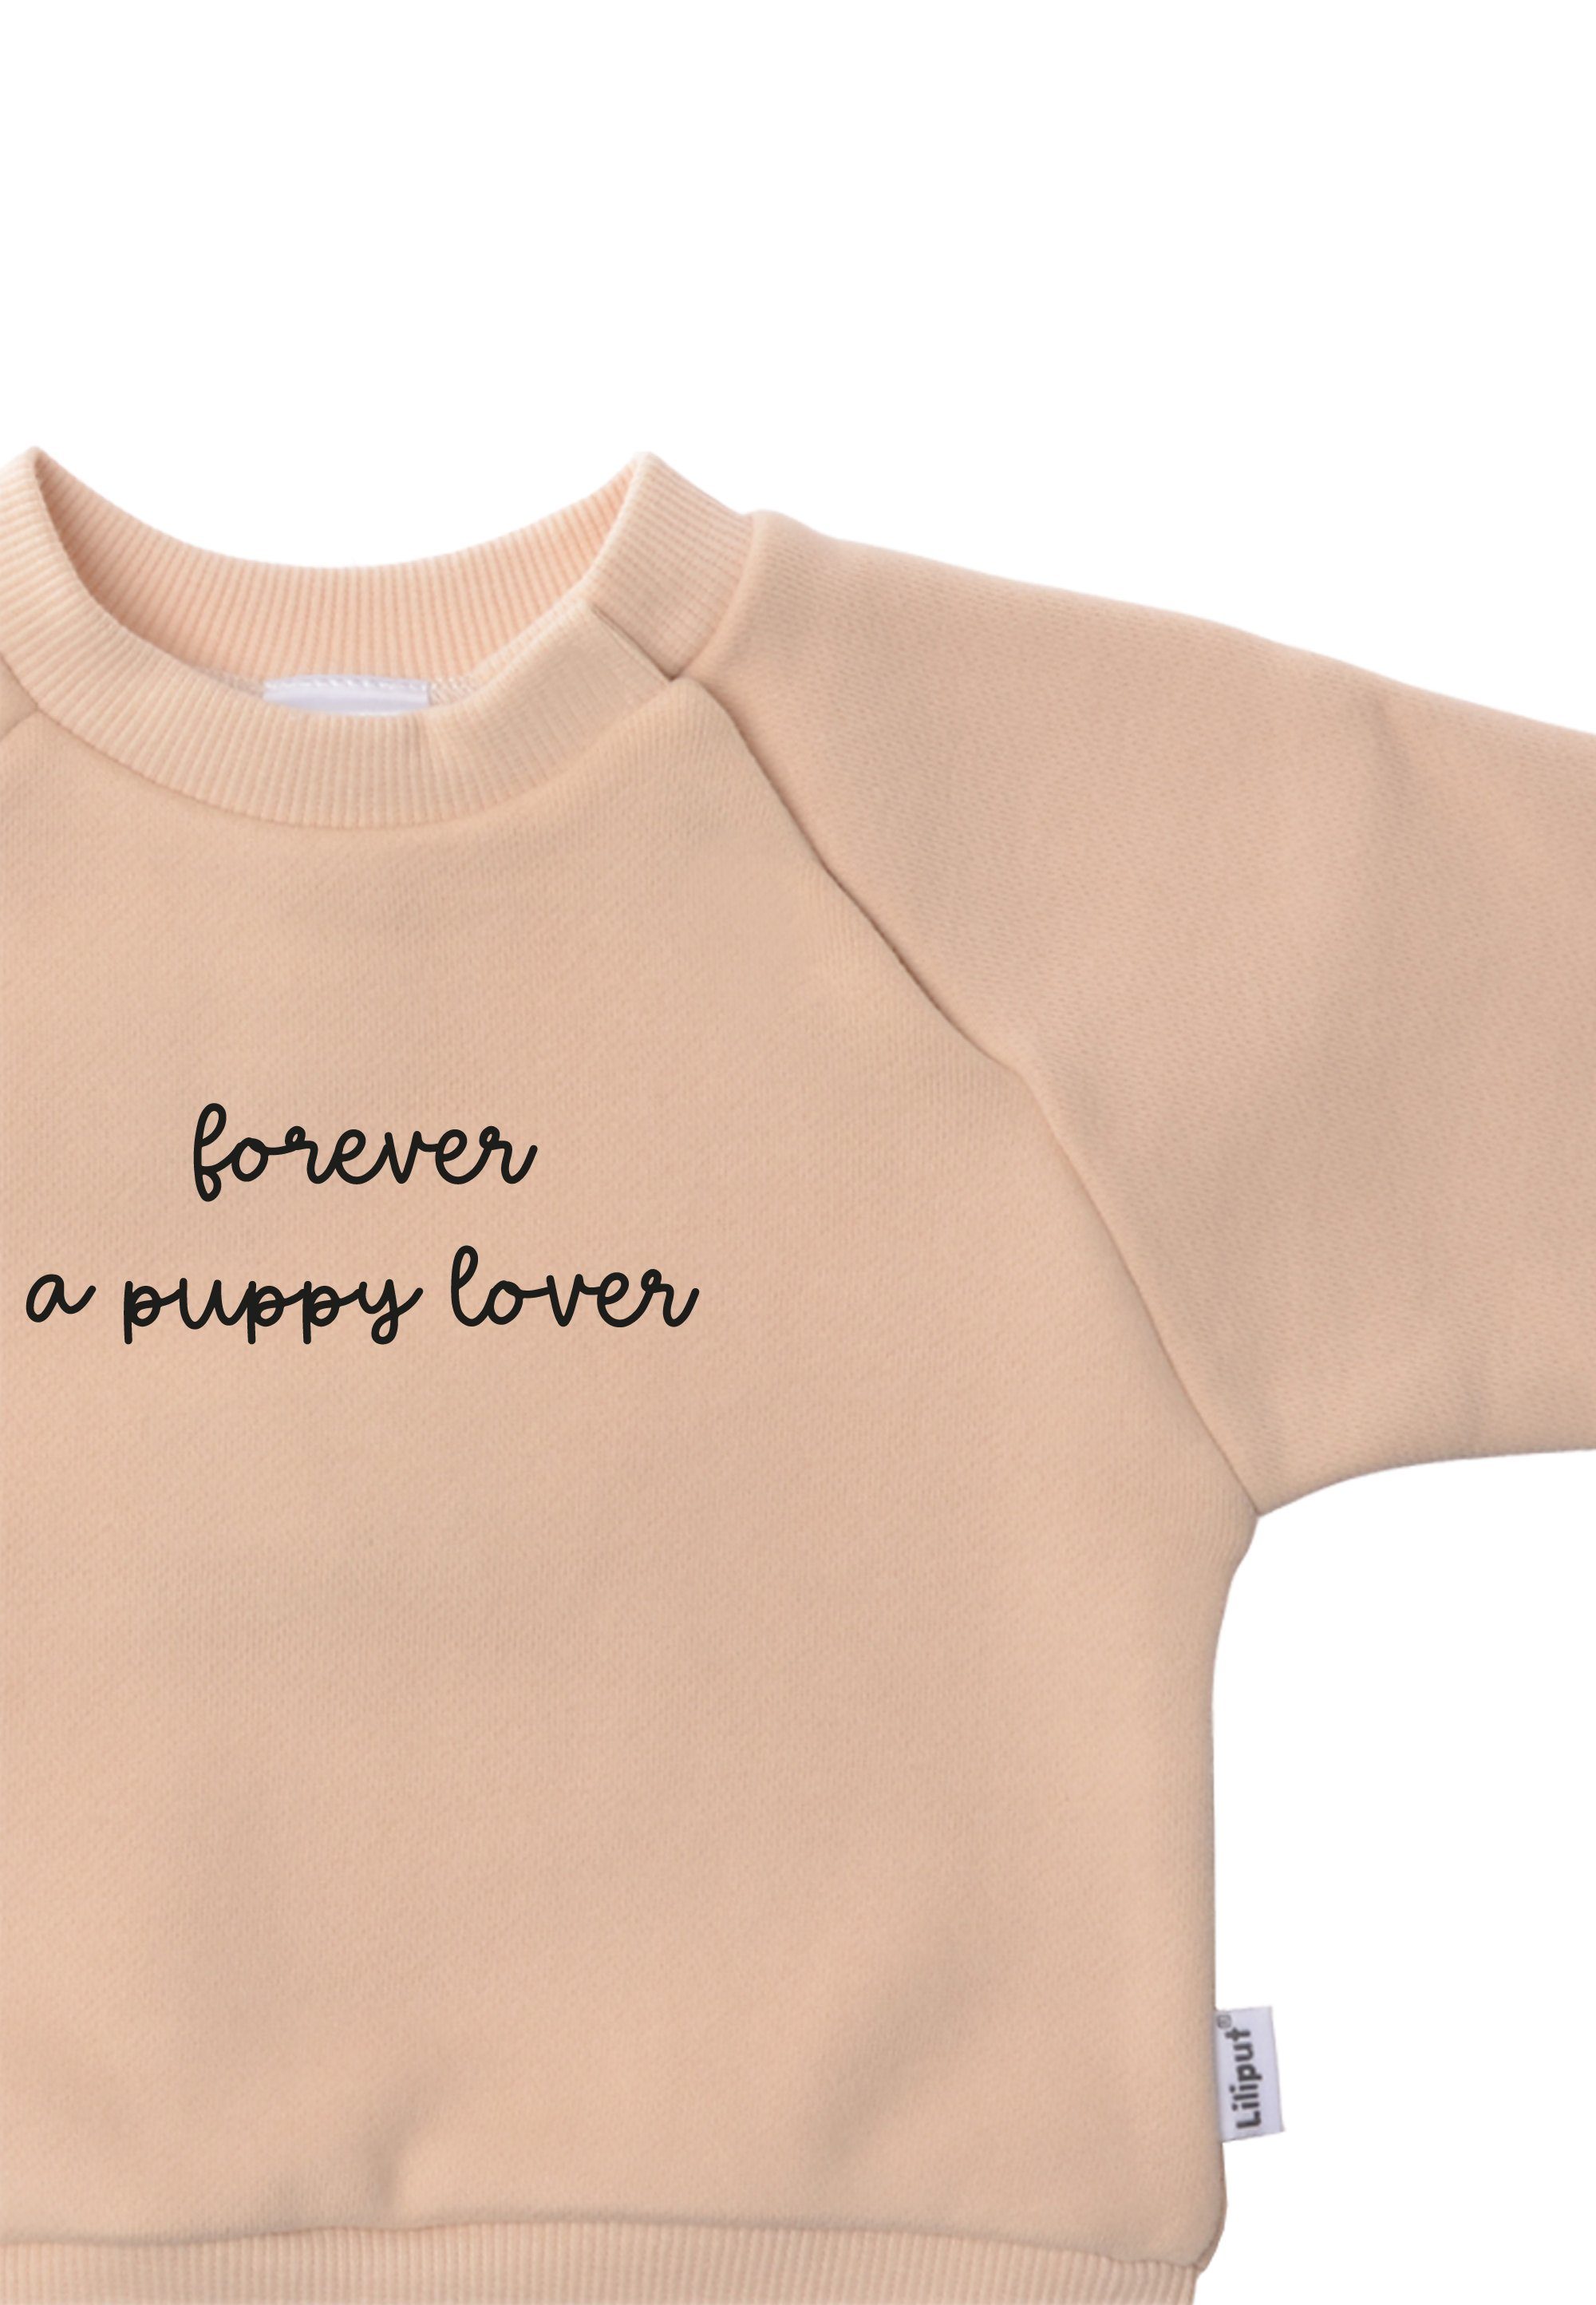 Liliput Sweatshirt aus lover a Forever puppy weichem Material